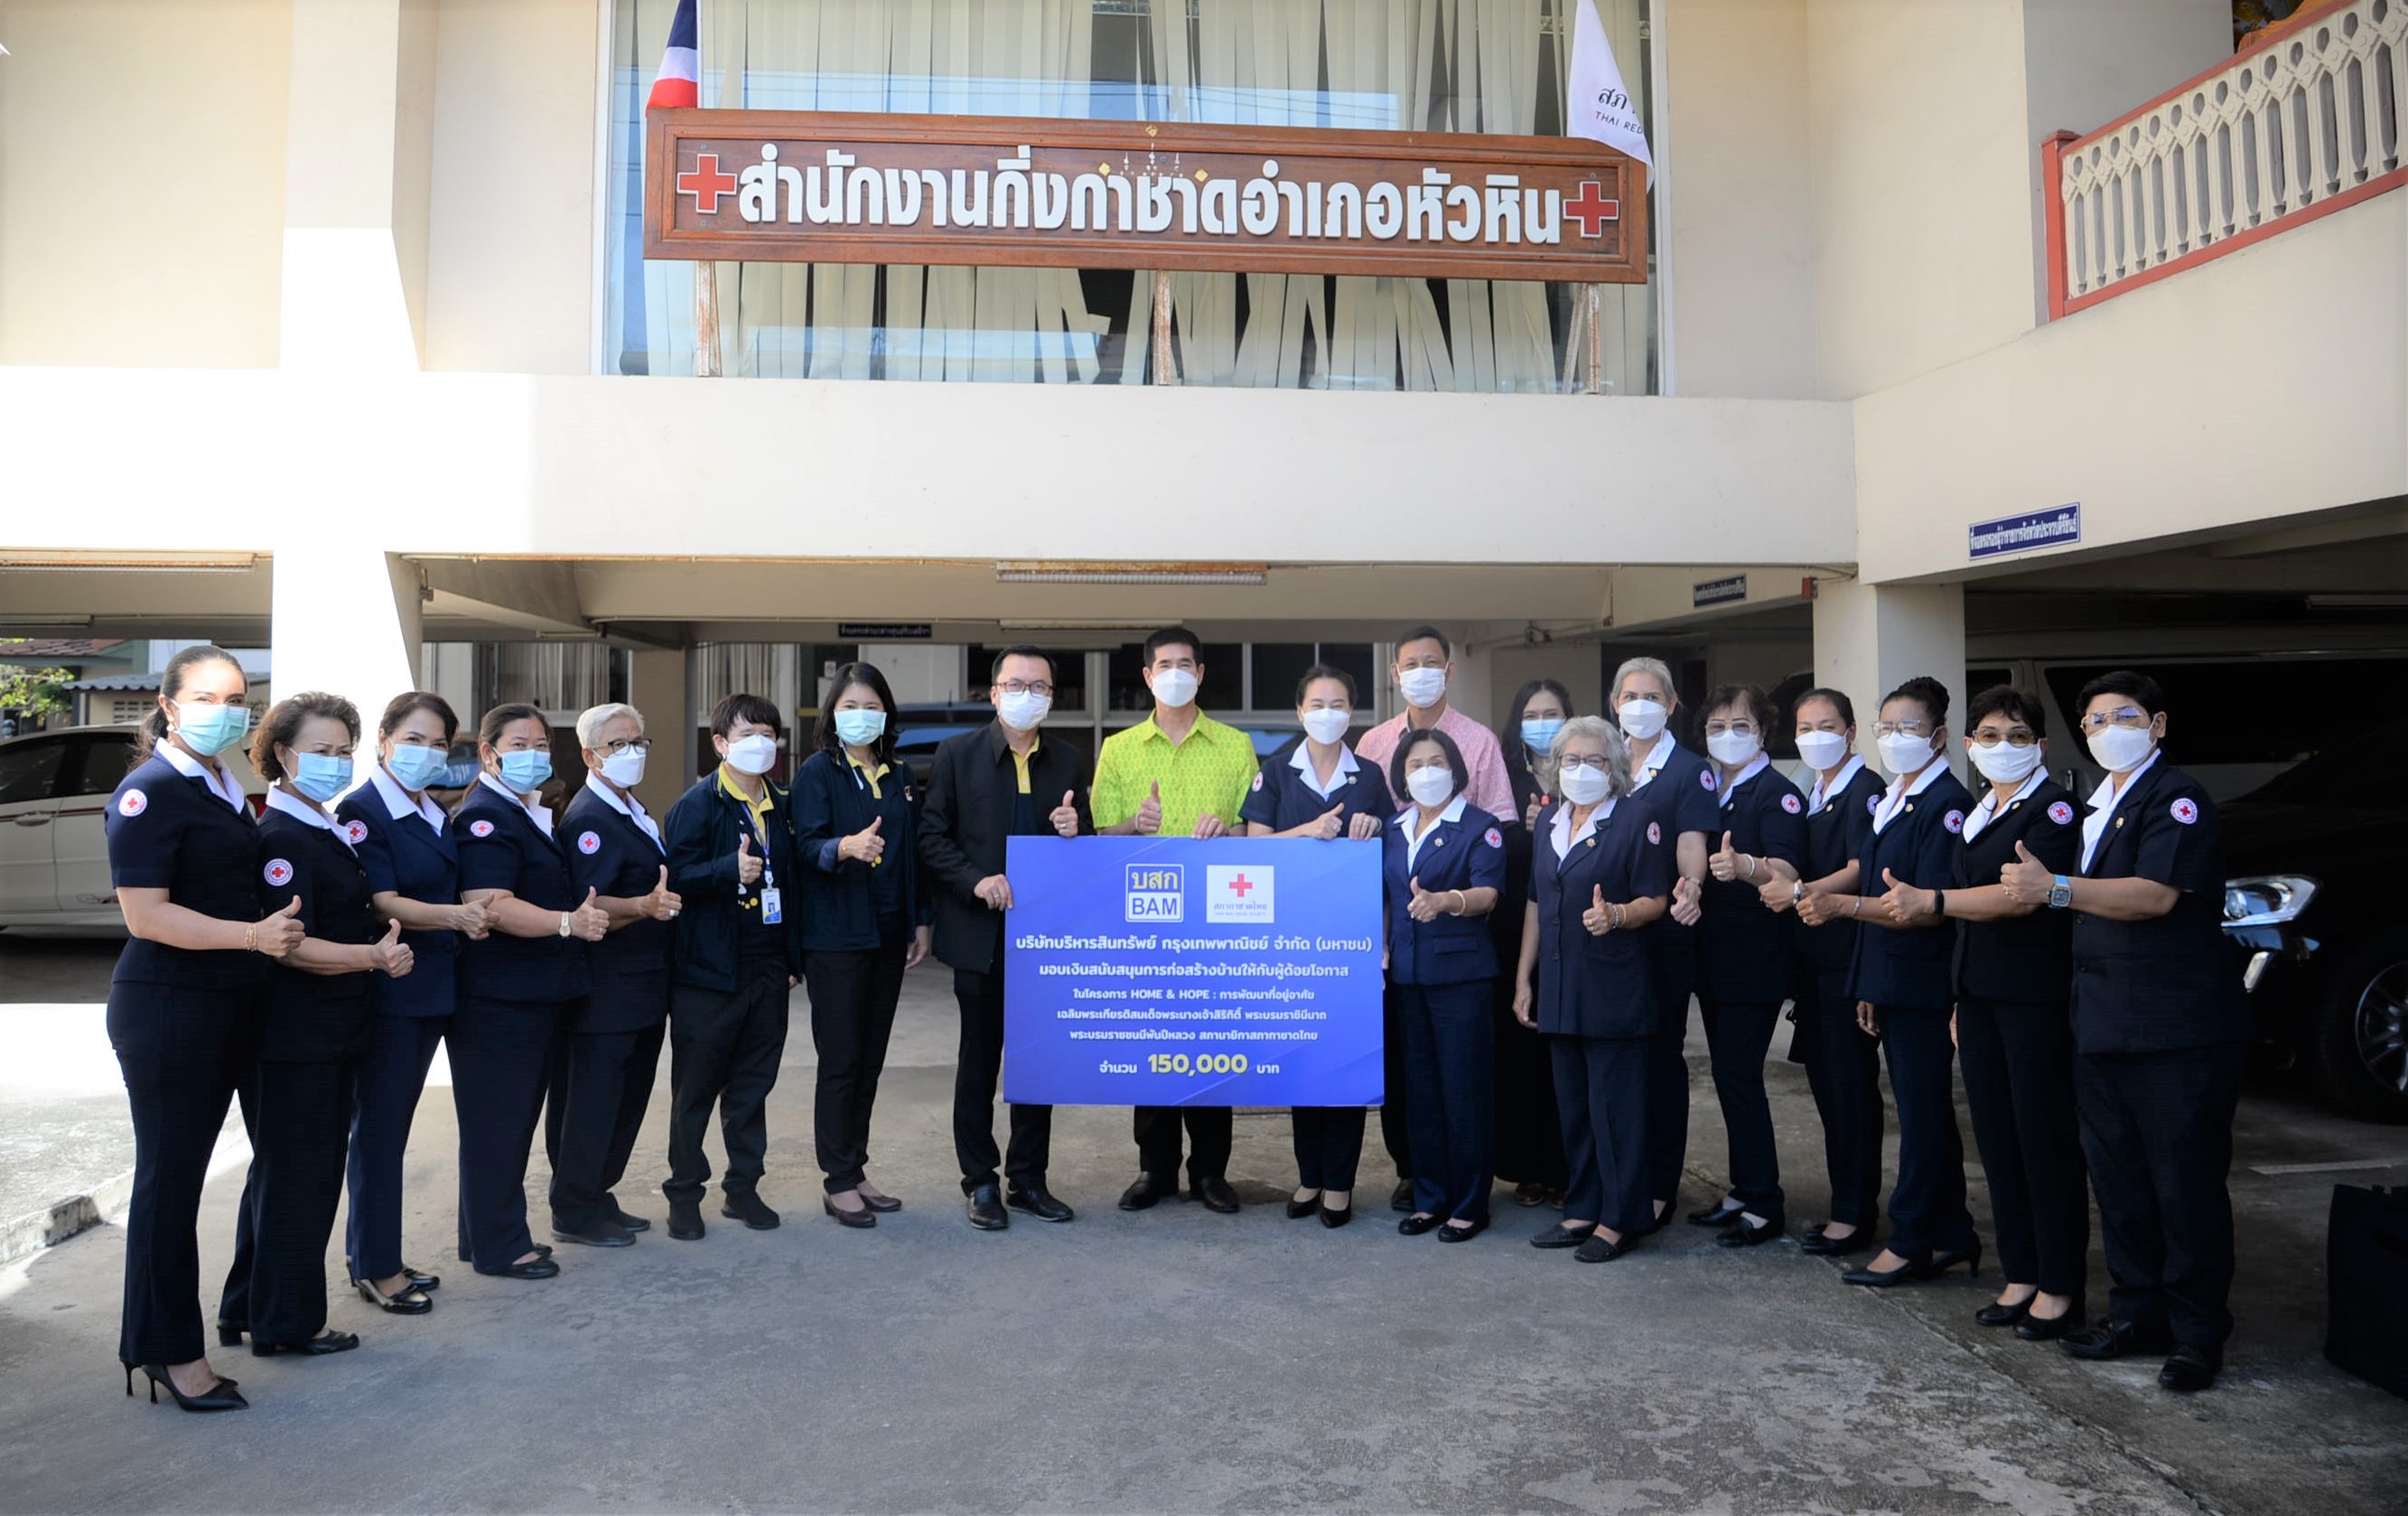 BAM ร่วมกับสภากาชาดไทย จัดโครงการ HOME & HOPE  ต่อเนื่องเป็นปีที่ 2 สร้างบ้านให้กับผู้ด้อยโอกาส จ.ประจวบคีรีขันธ์